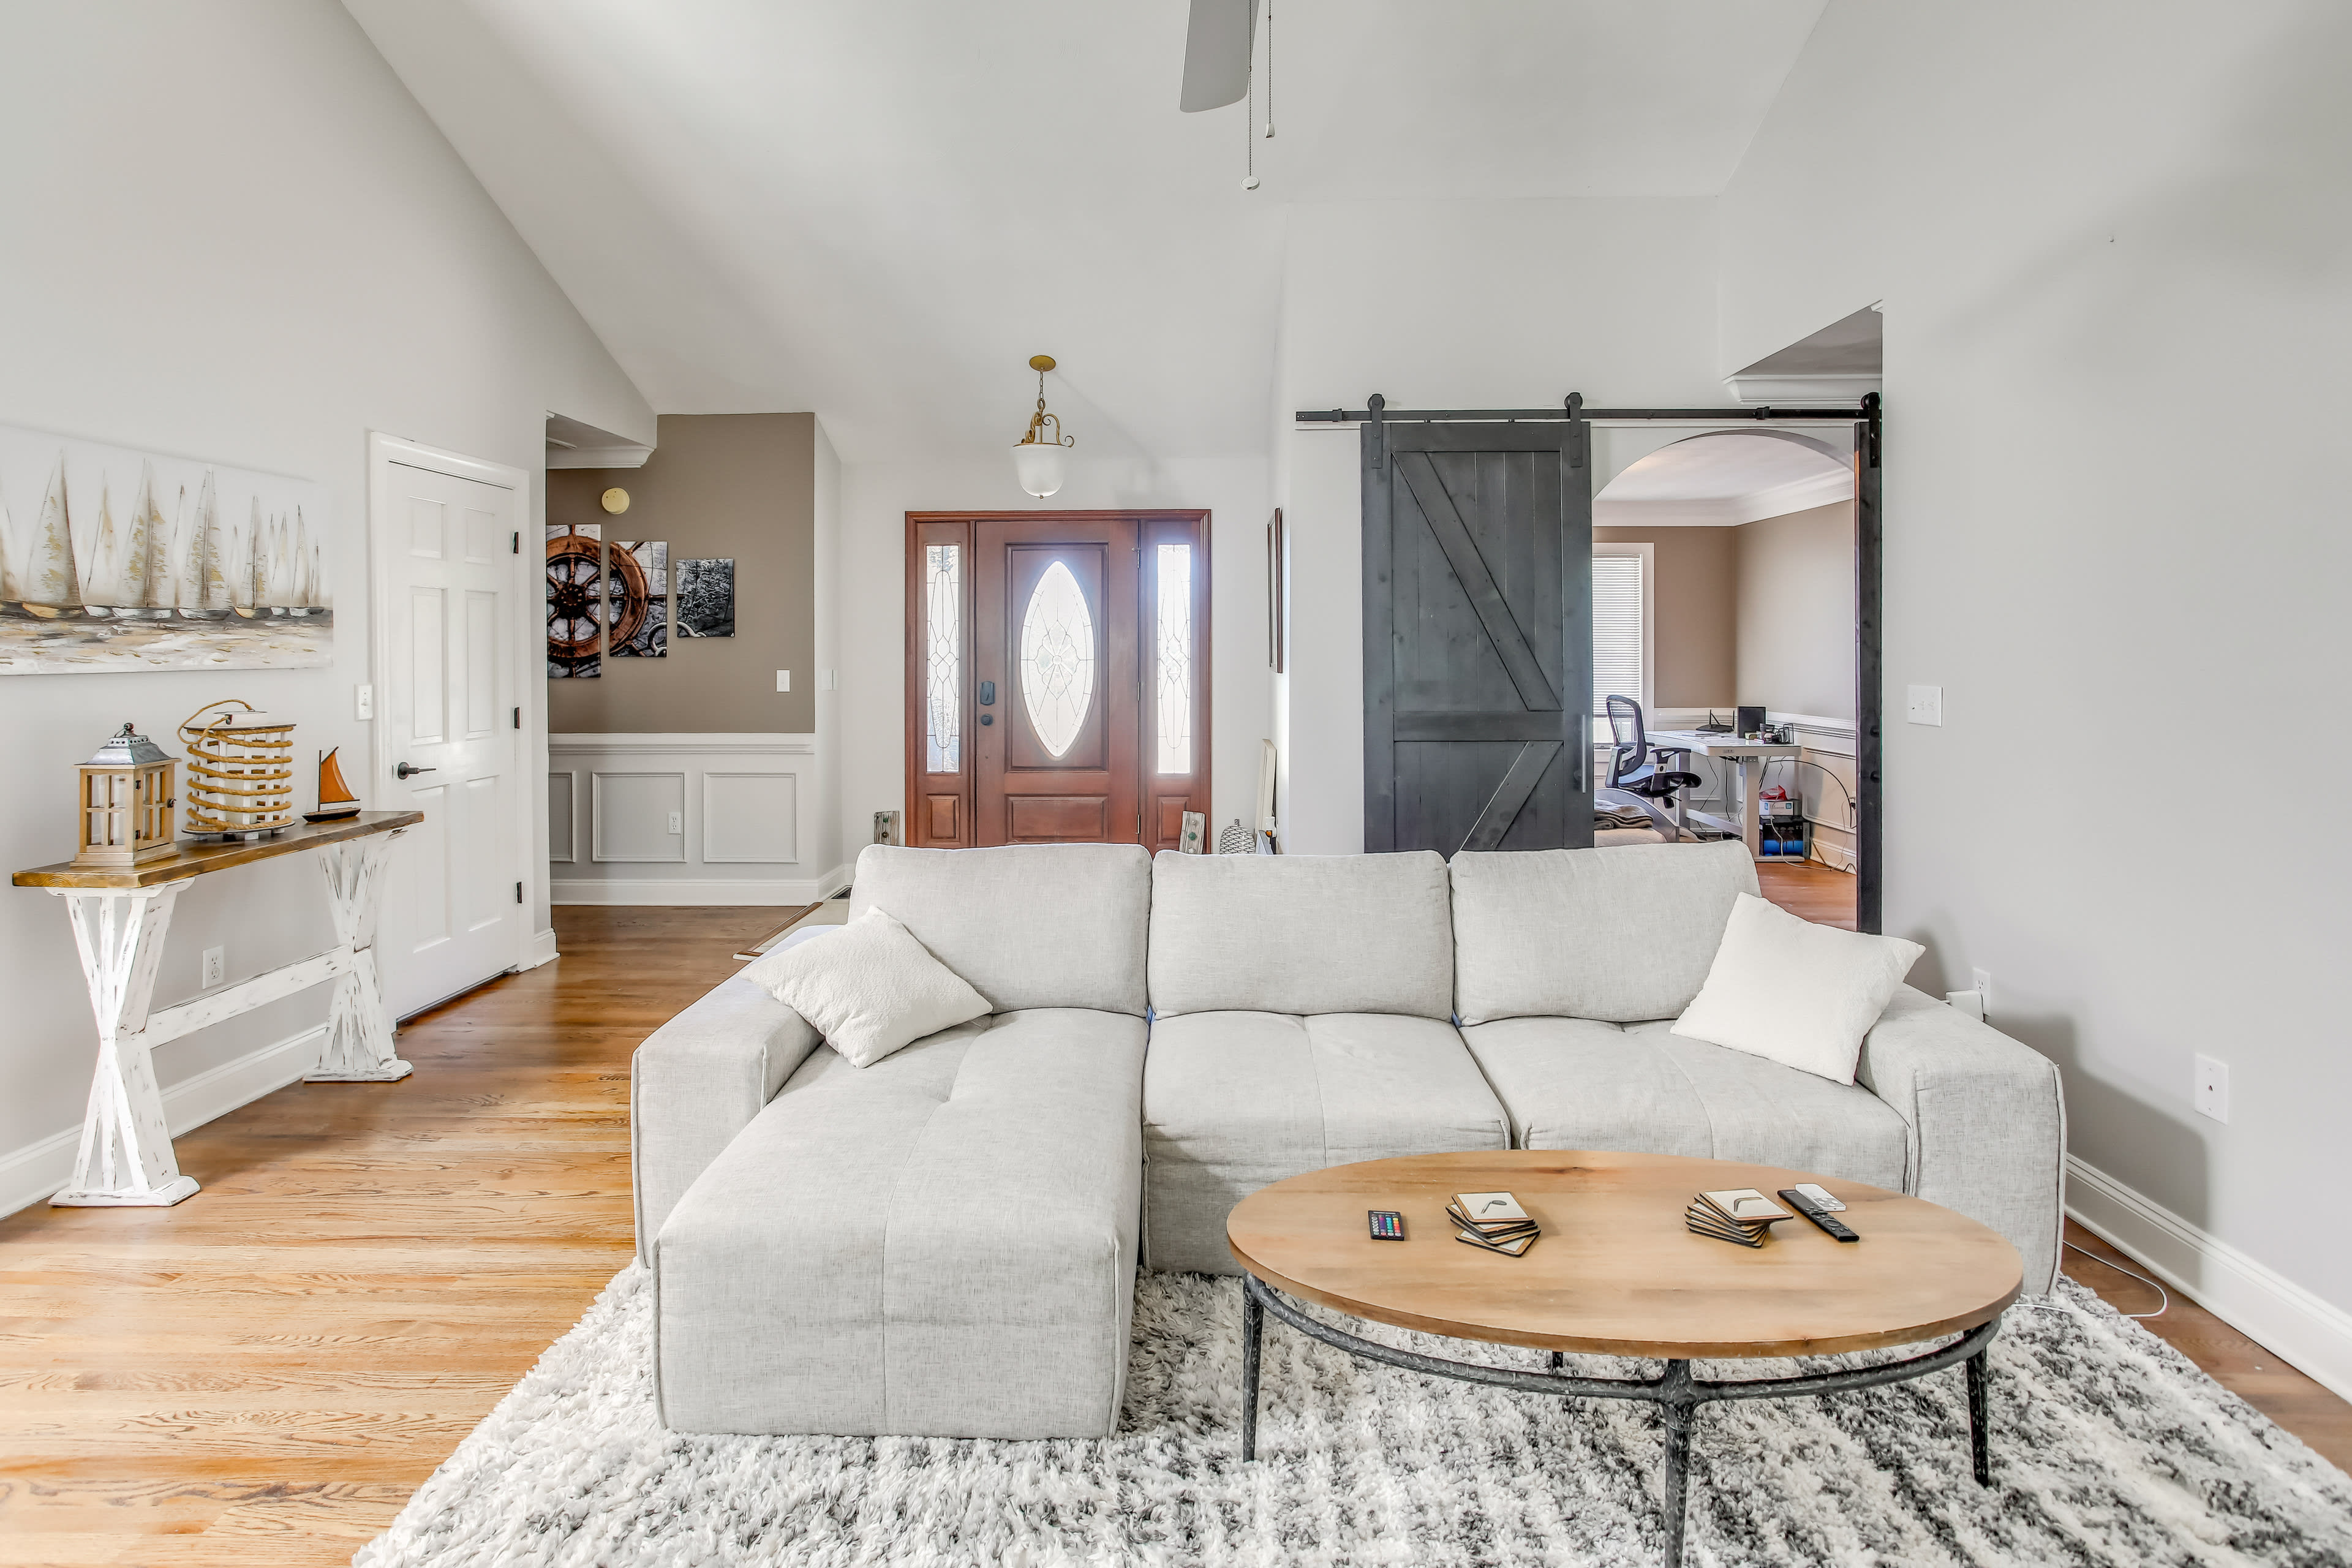 Living Room | Full Sleeper Sofa | Smart TV | Single-Story Home